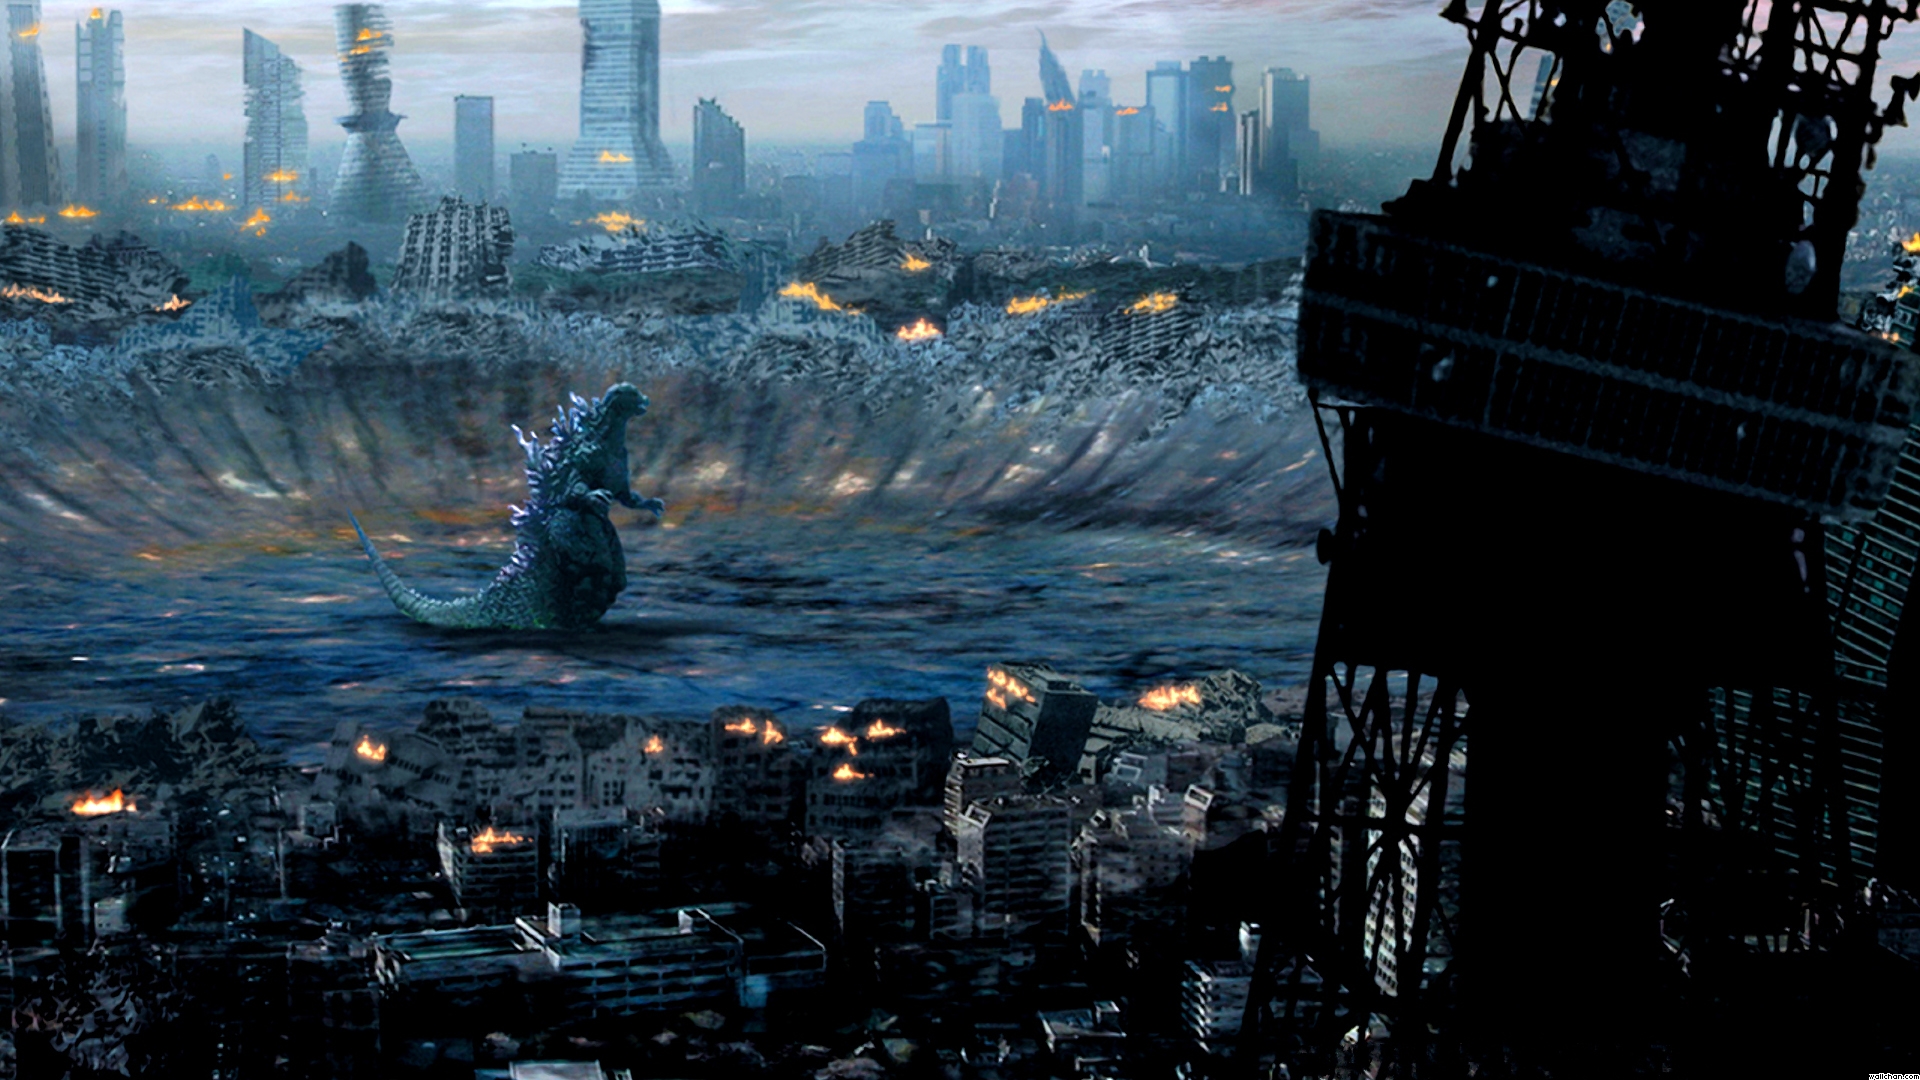 Descarga gratuita de fondo de pantalla para móvil de Godzilla, Fantasía.